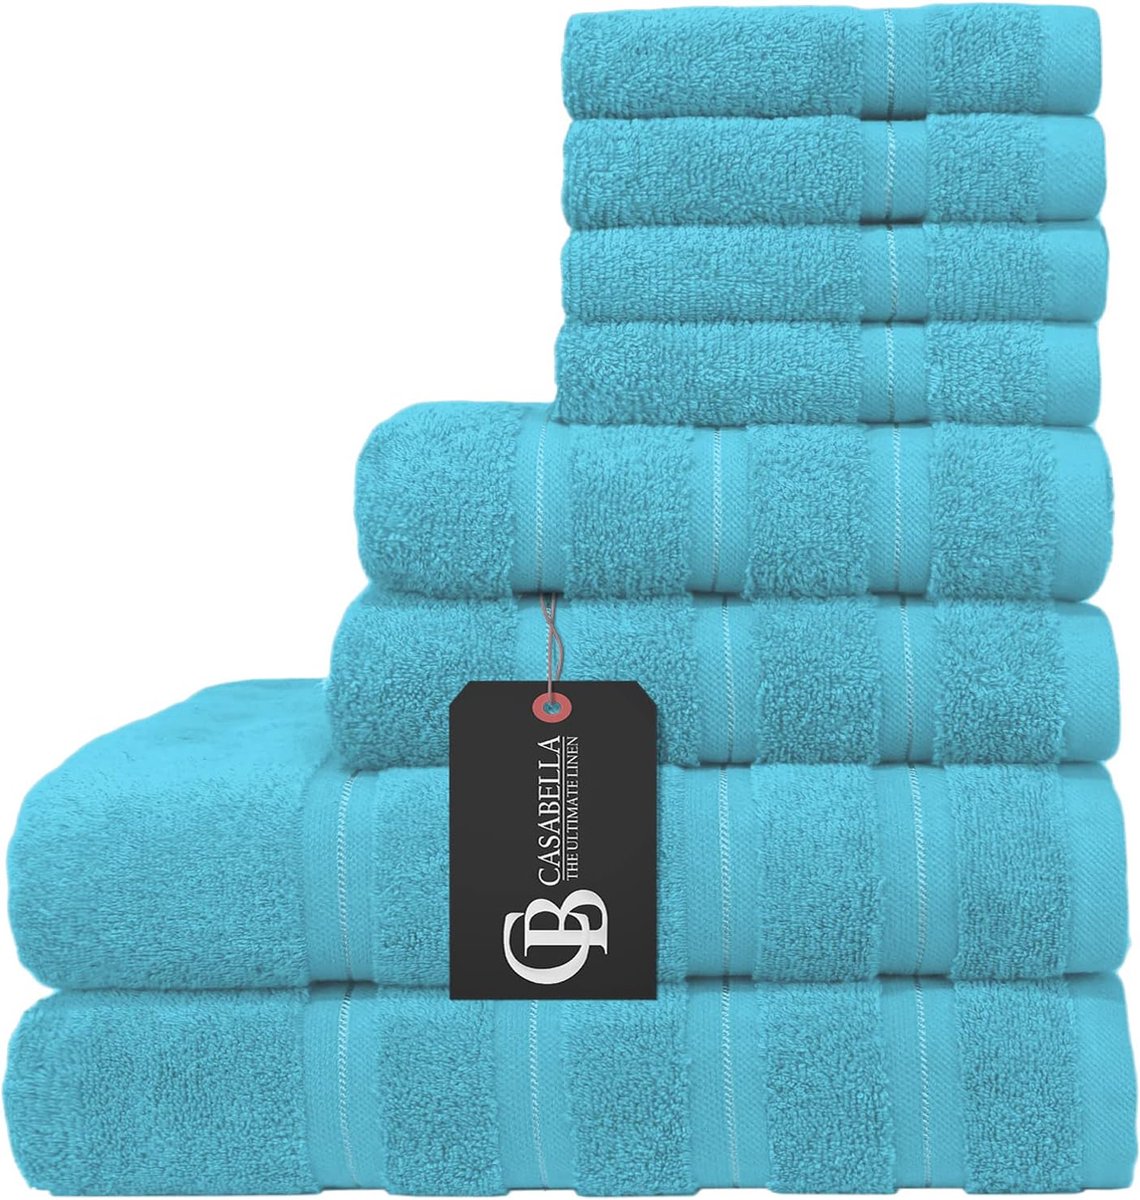 Premium Kwaliteit 8 Pc Set Teal Handdoek Set 100% Gekamd Katoen 650 GSM Handdoeken Set-2 Badhanddoeken, 2 Handdoeken, 4 Wasdoeken, Zeer Absorbeerbare 8 Pc Teal Handdoek Bale Sets